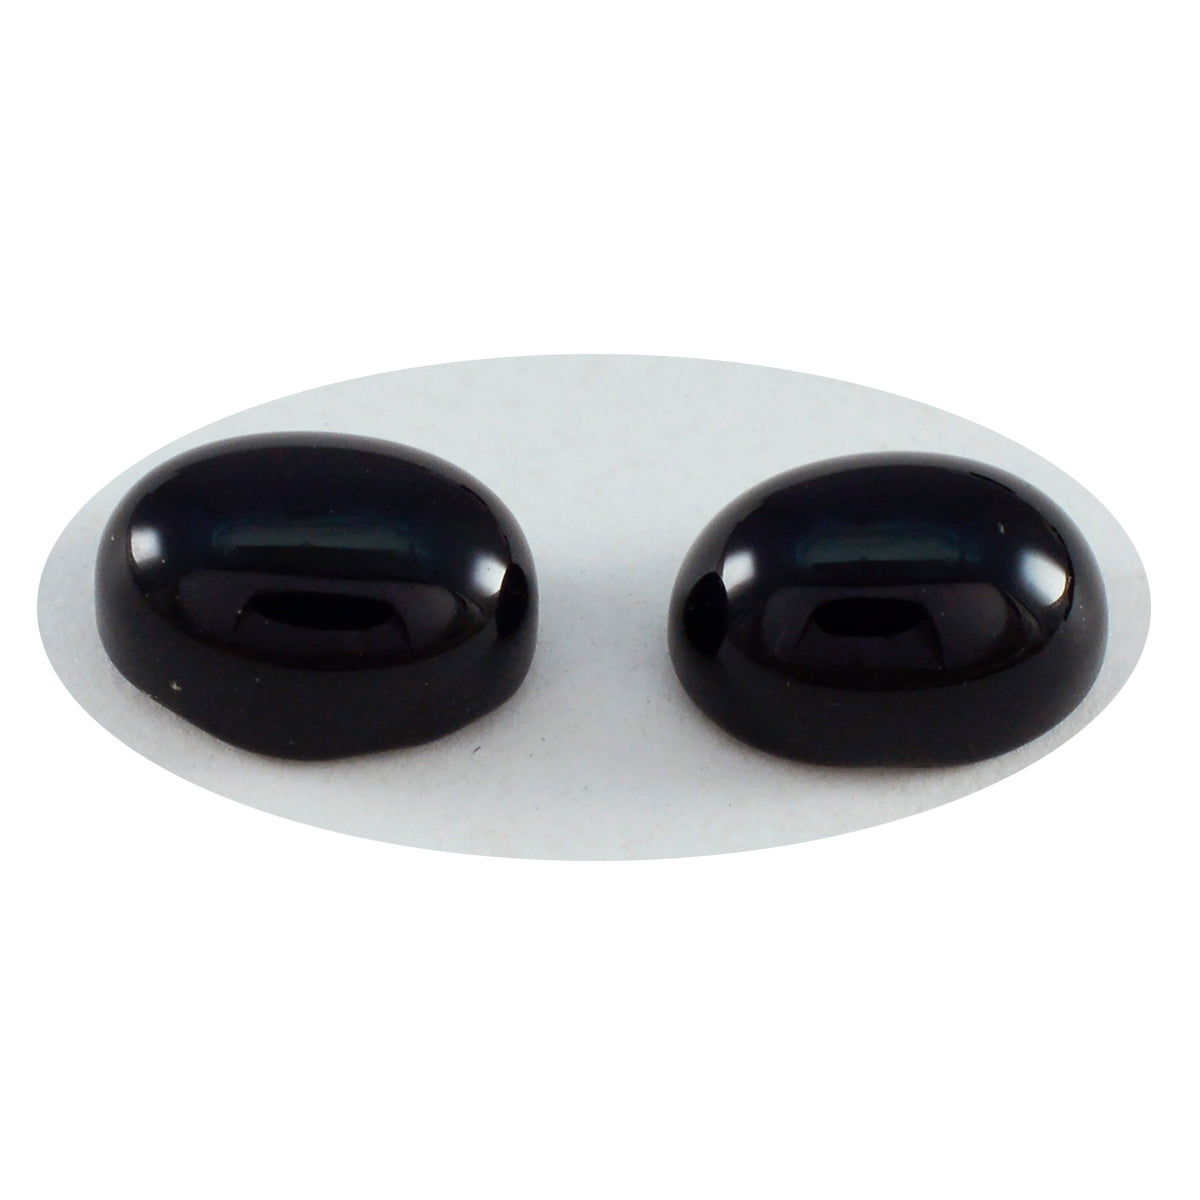 Riyogems 1 Stück schwarzer Onyx-Cabochon, 7 x 9 mm, ovale Form, erstaunliche Qualität, lose Edelsteine